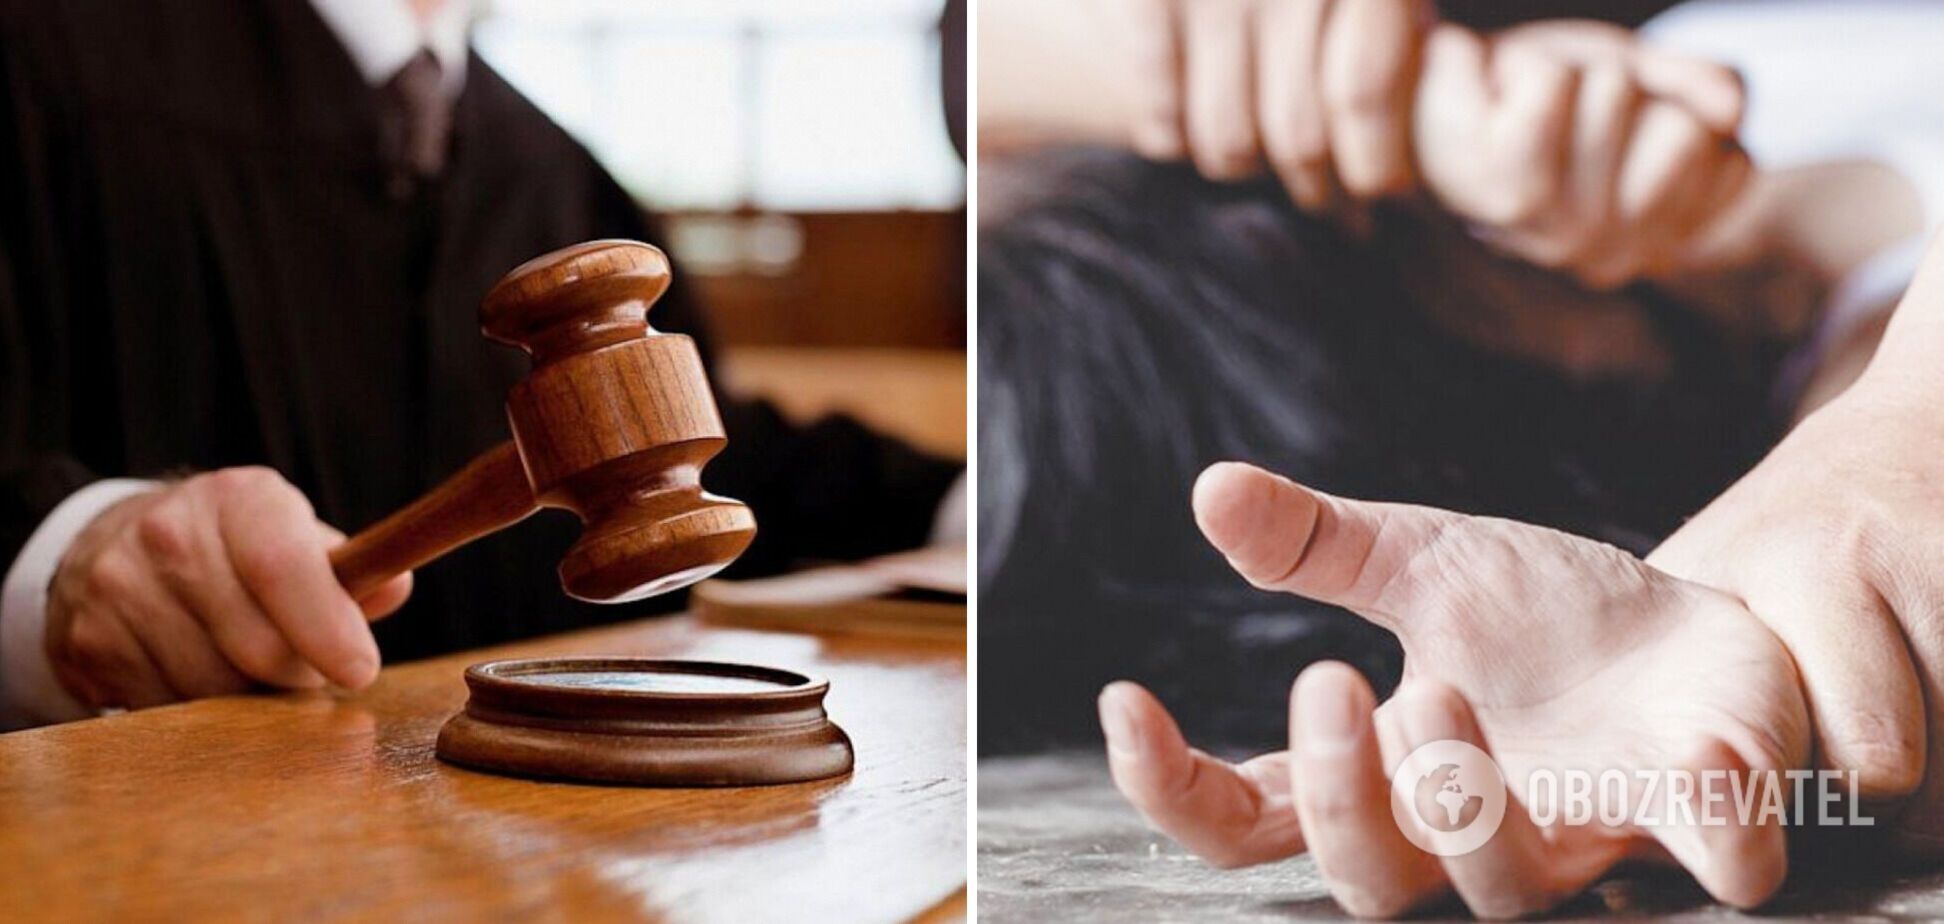 Суд вынес приговор 20-летнему парню, который изнасиловал сестру: мать пыталась скрыть преступление